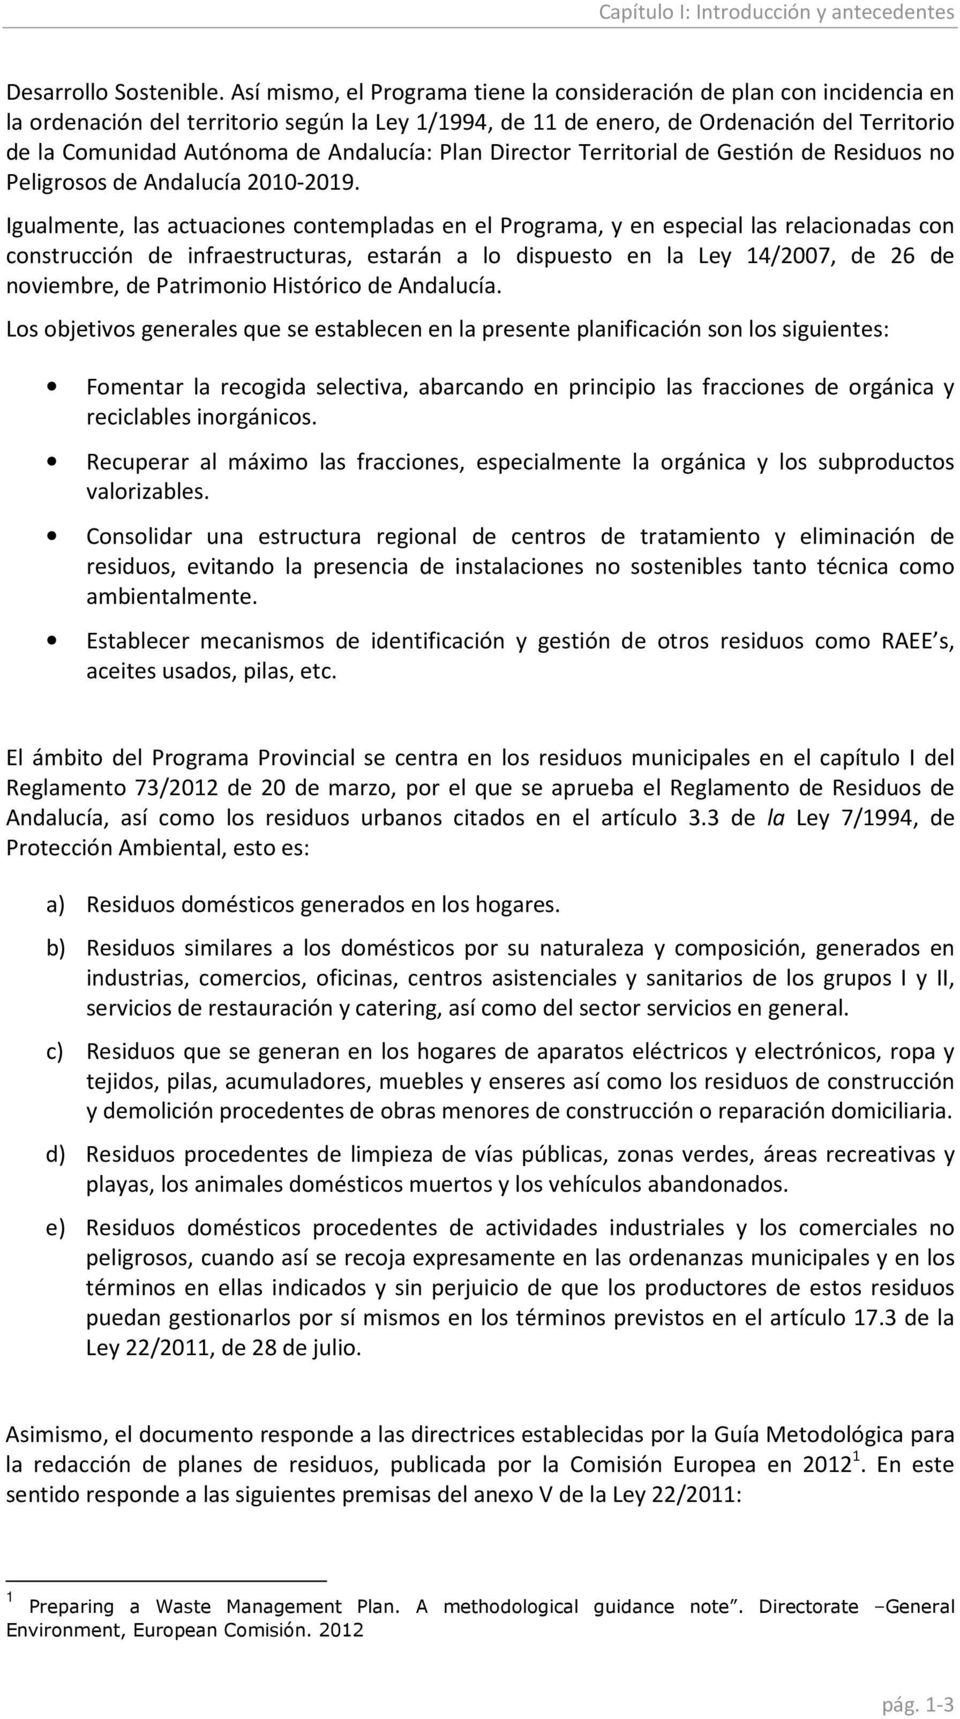 Andalucía: Plan Director Territorial de Gestión de Residuos no Peligrosos de Andalucía 2010-2019.